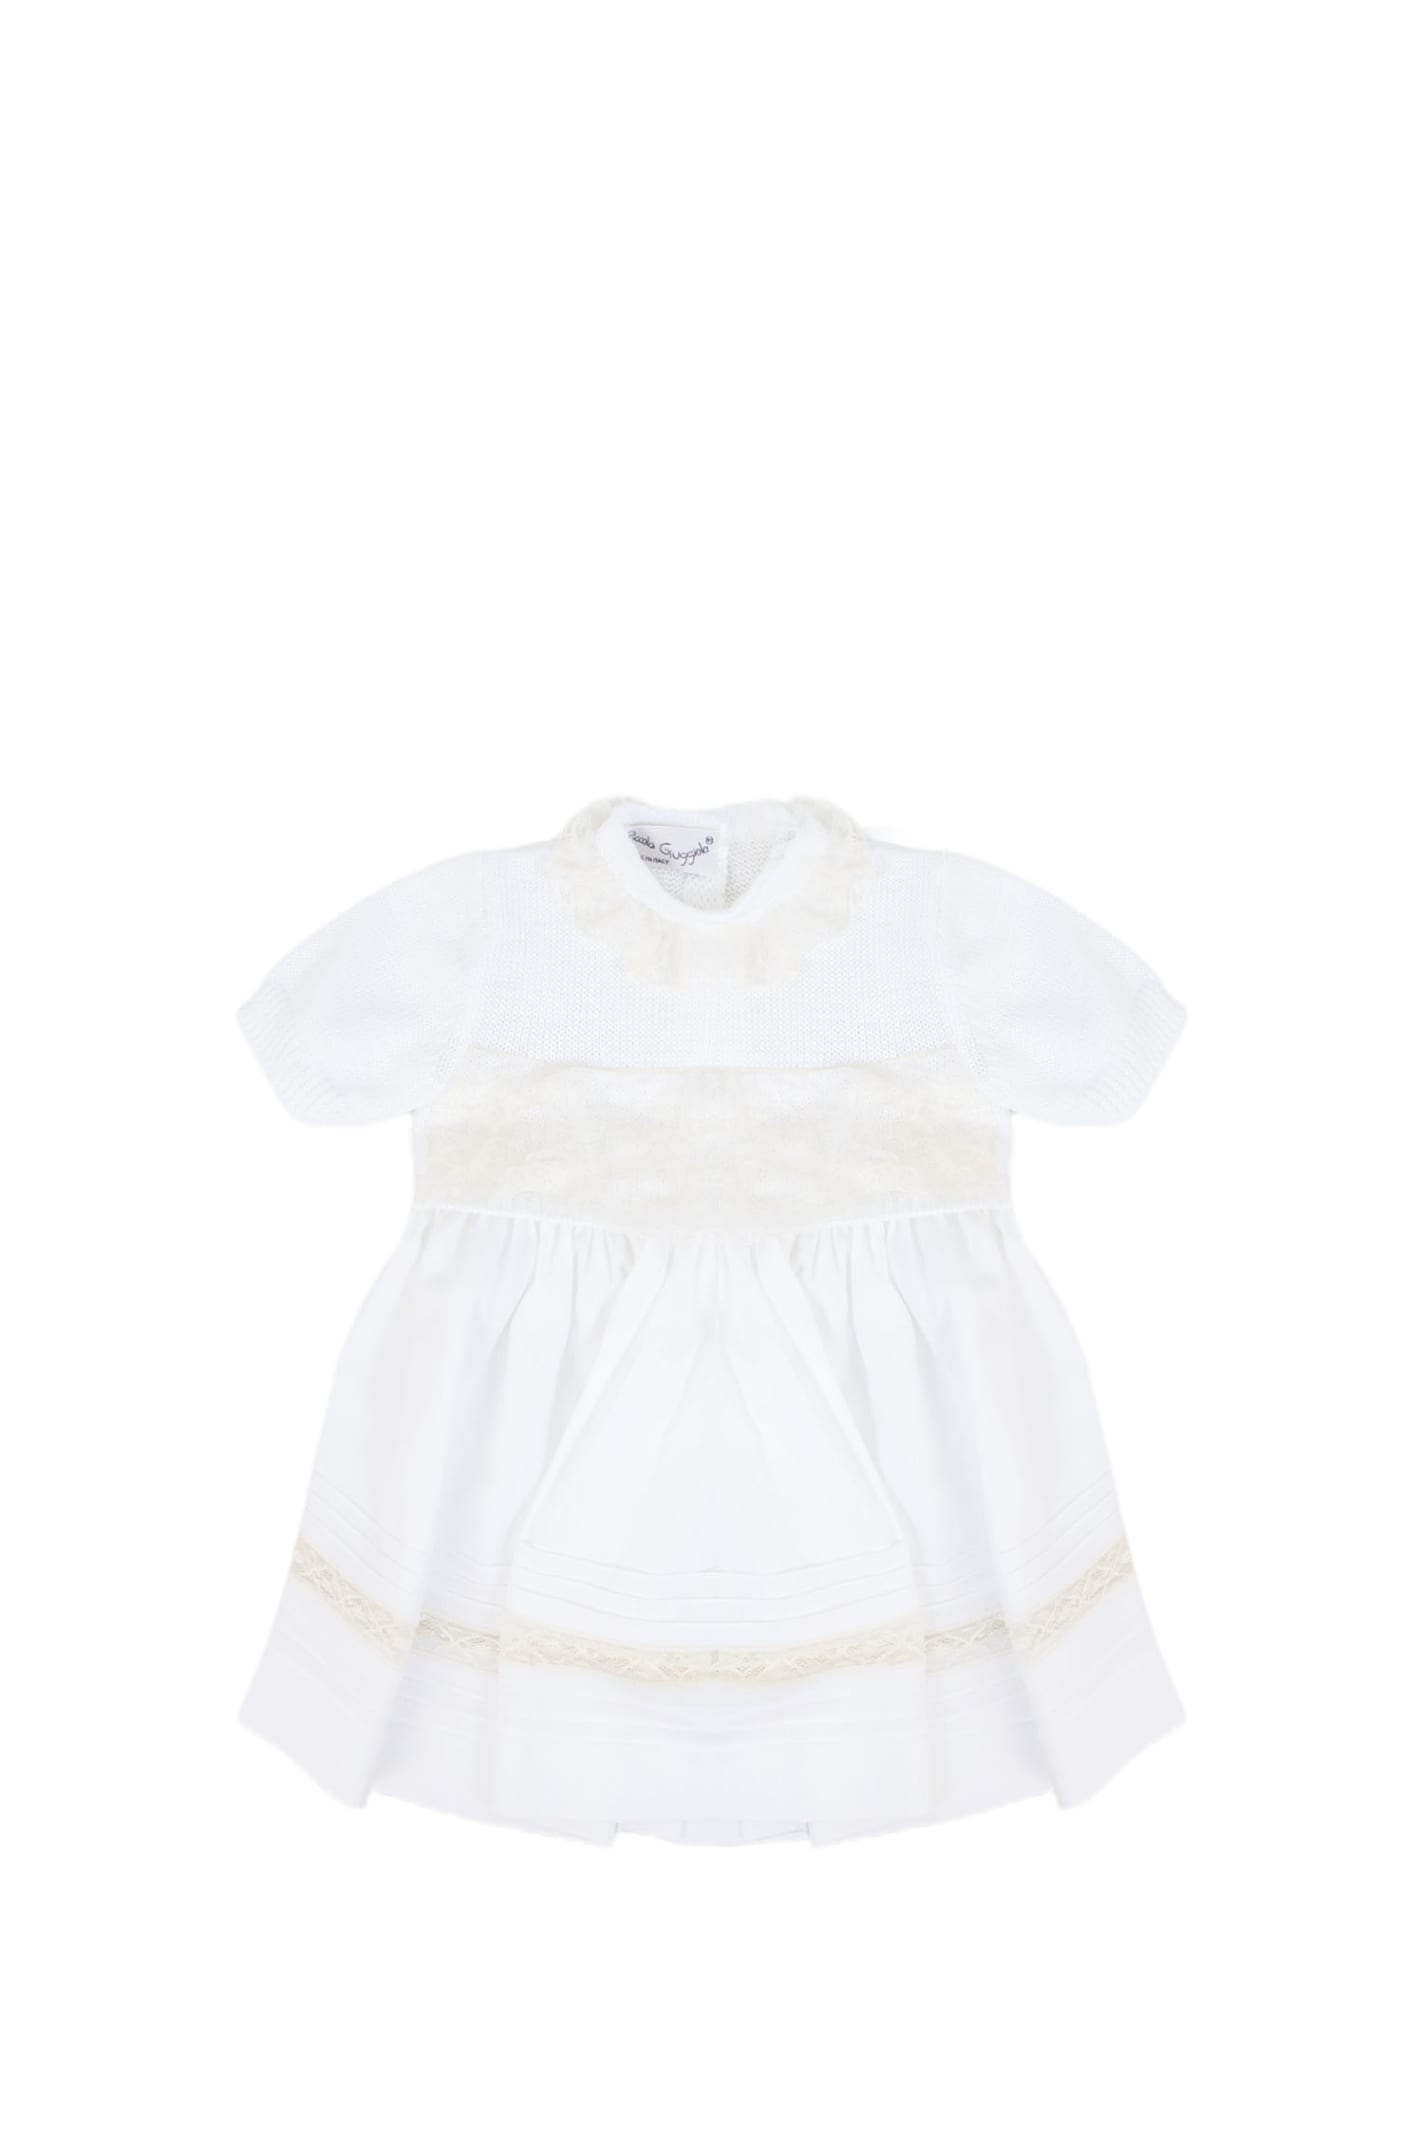 Piccola Giuggiola Babies' Cotton Dress In White